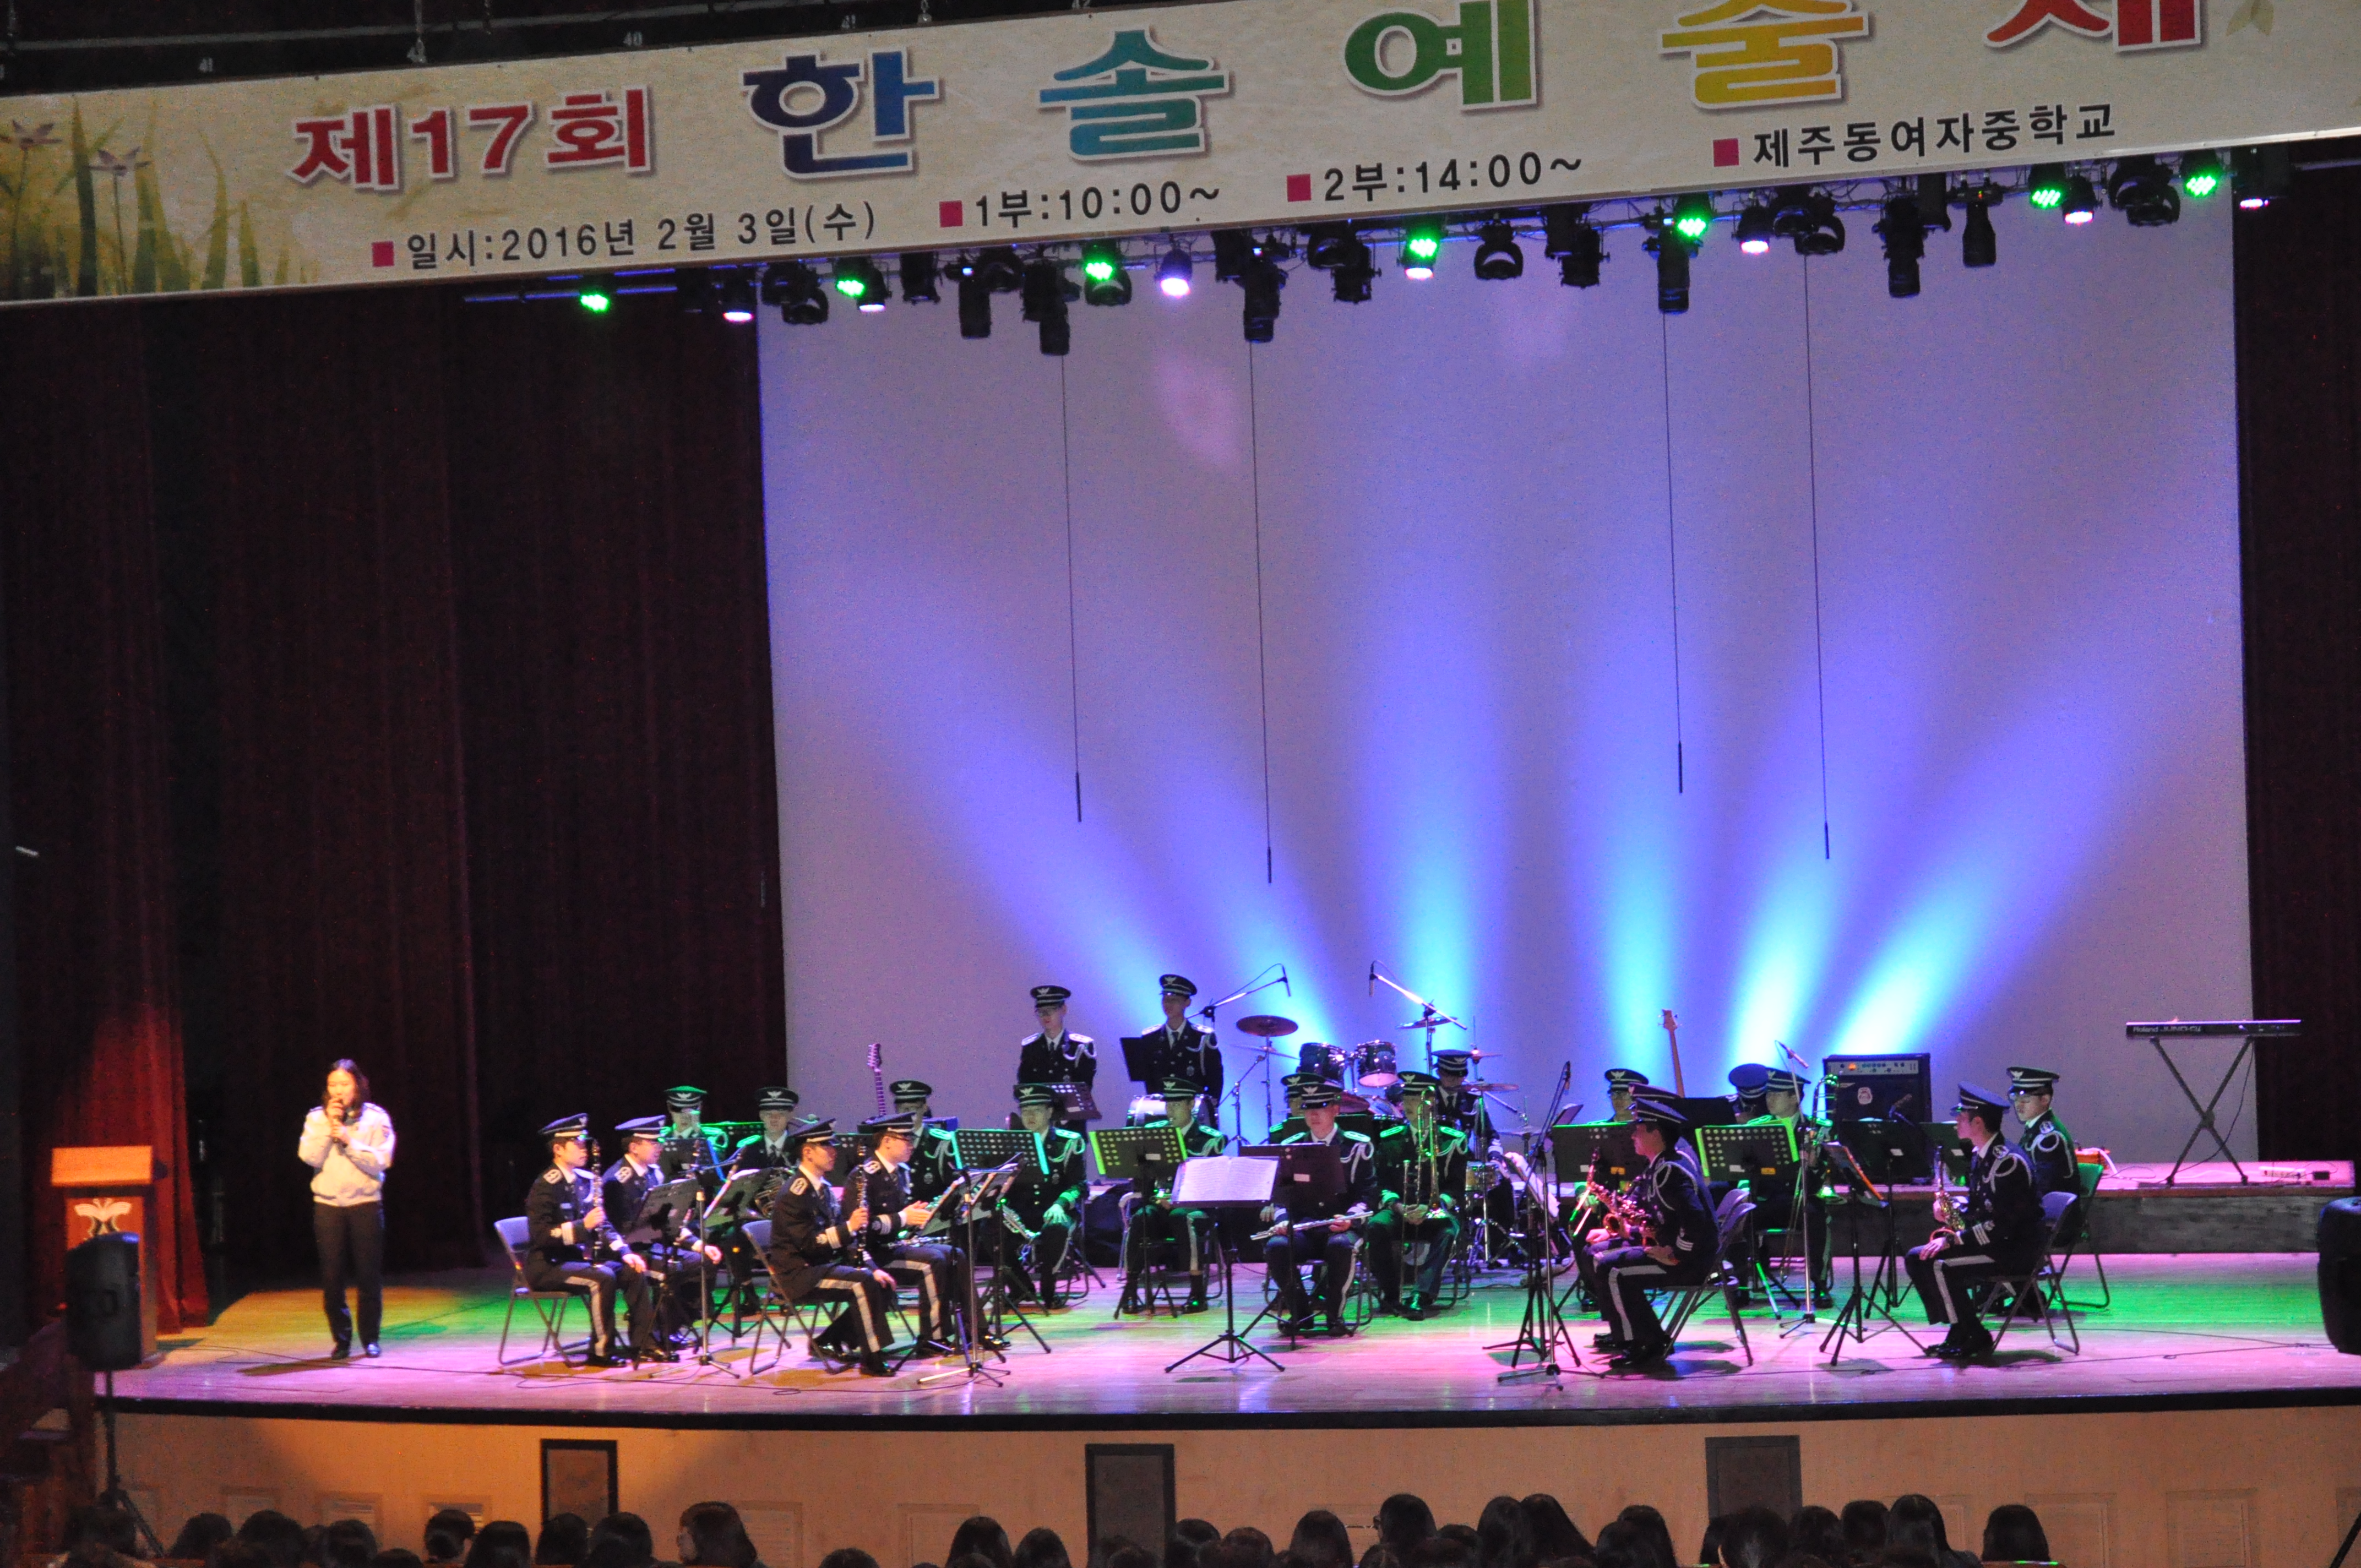 경찰악대, 「제주동여중학교 졸업식 행사(제17회 한솔예술제)」 축하 공연